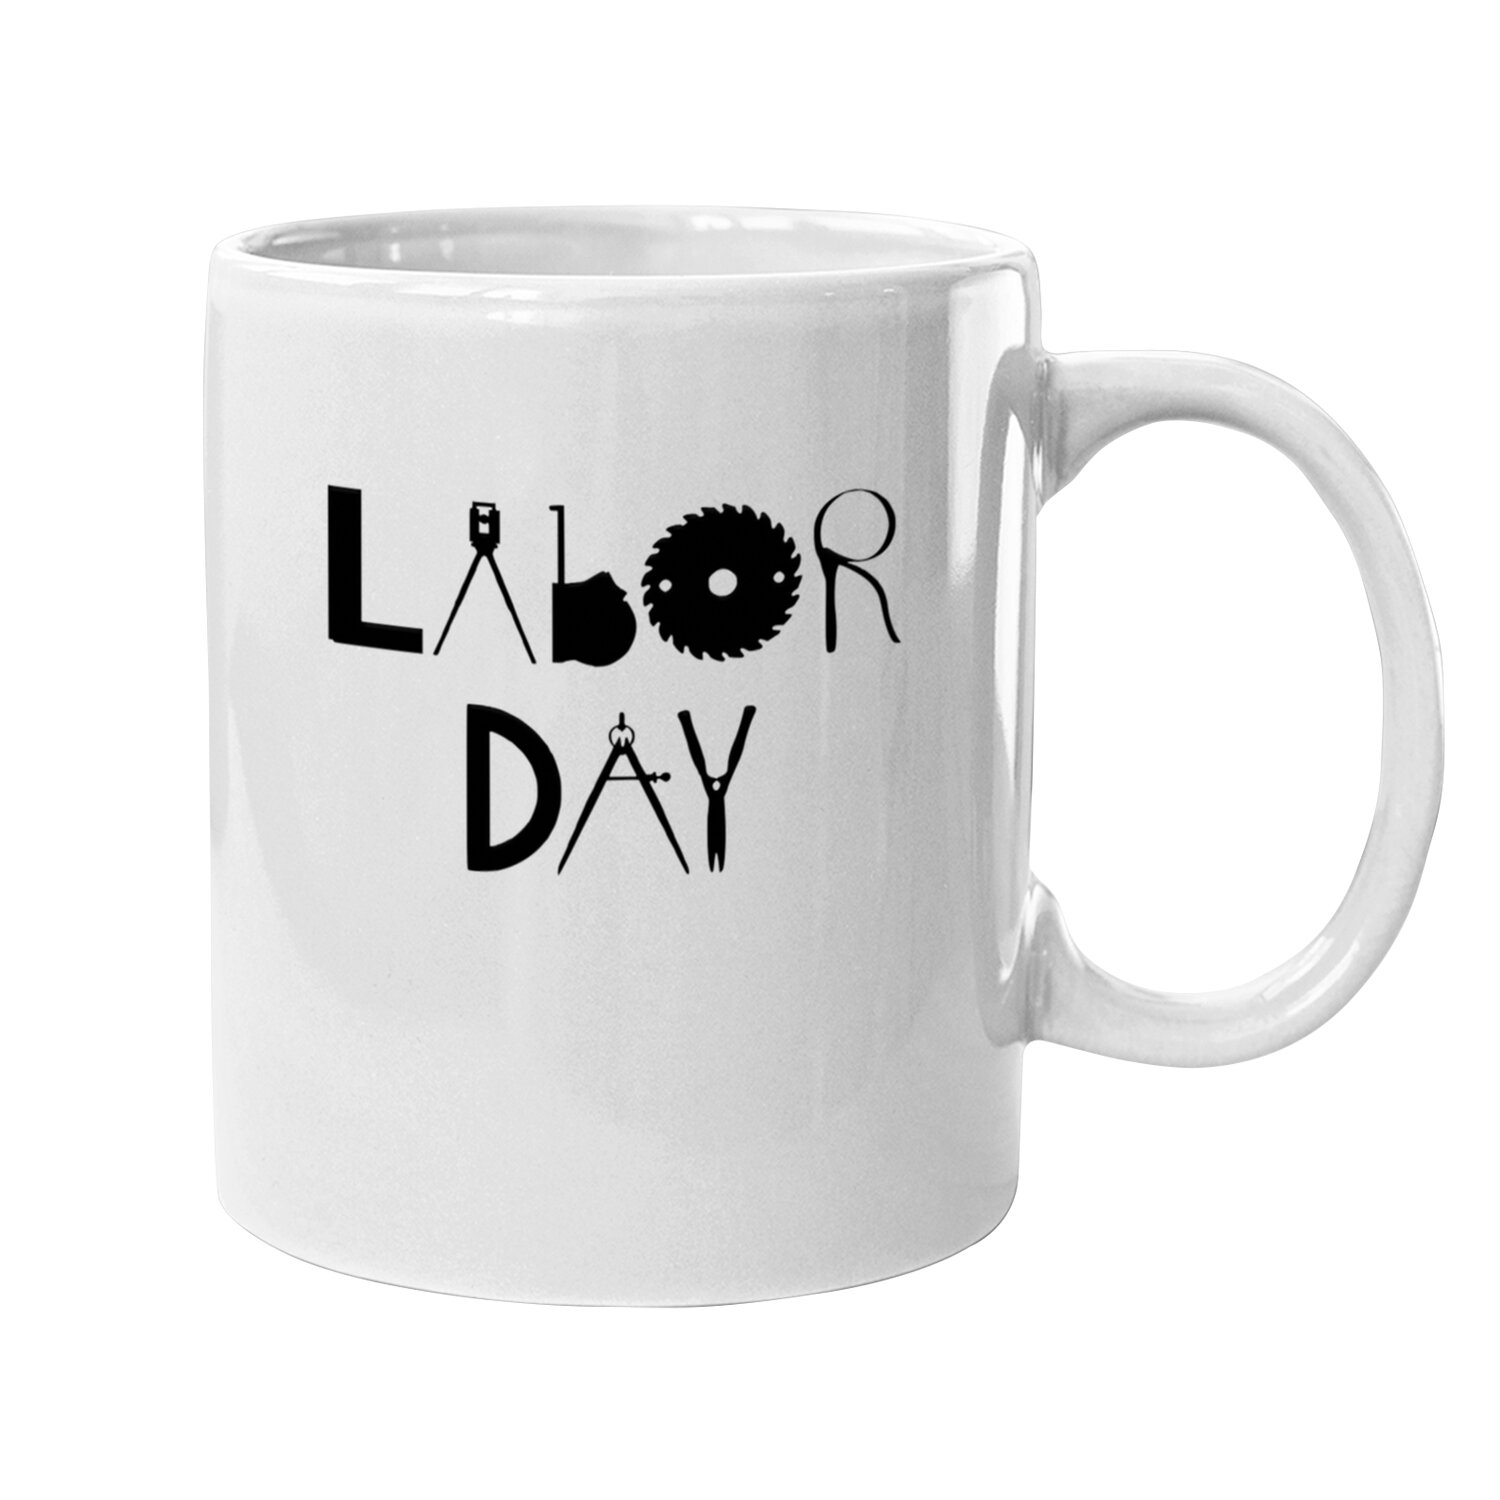 Labor Day Holiday - Mugs